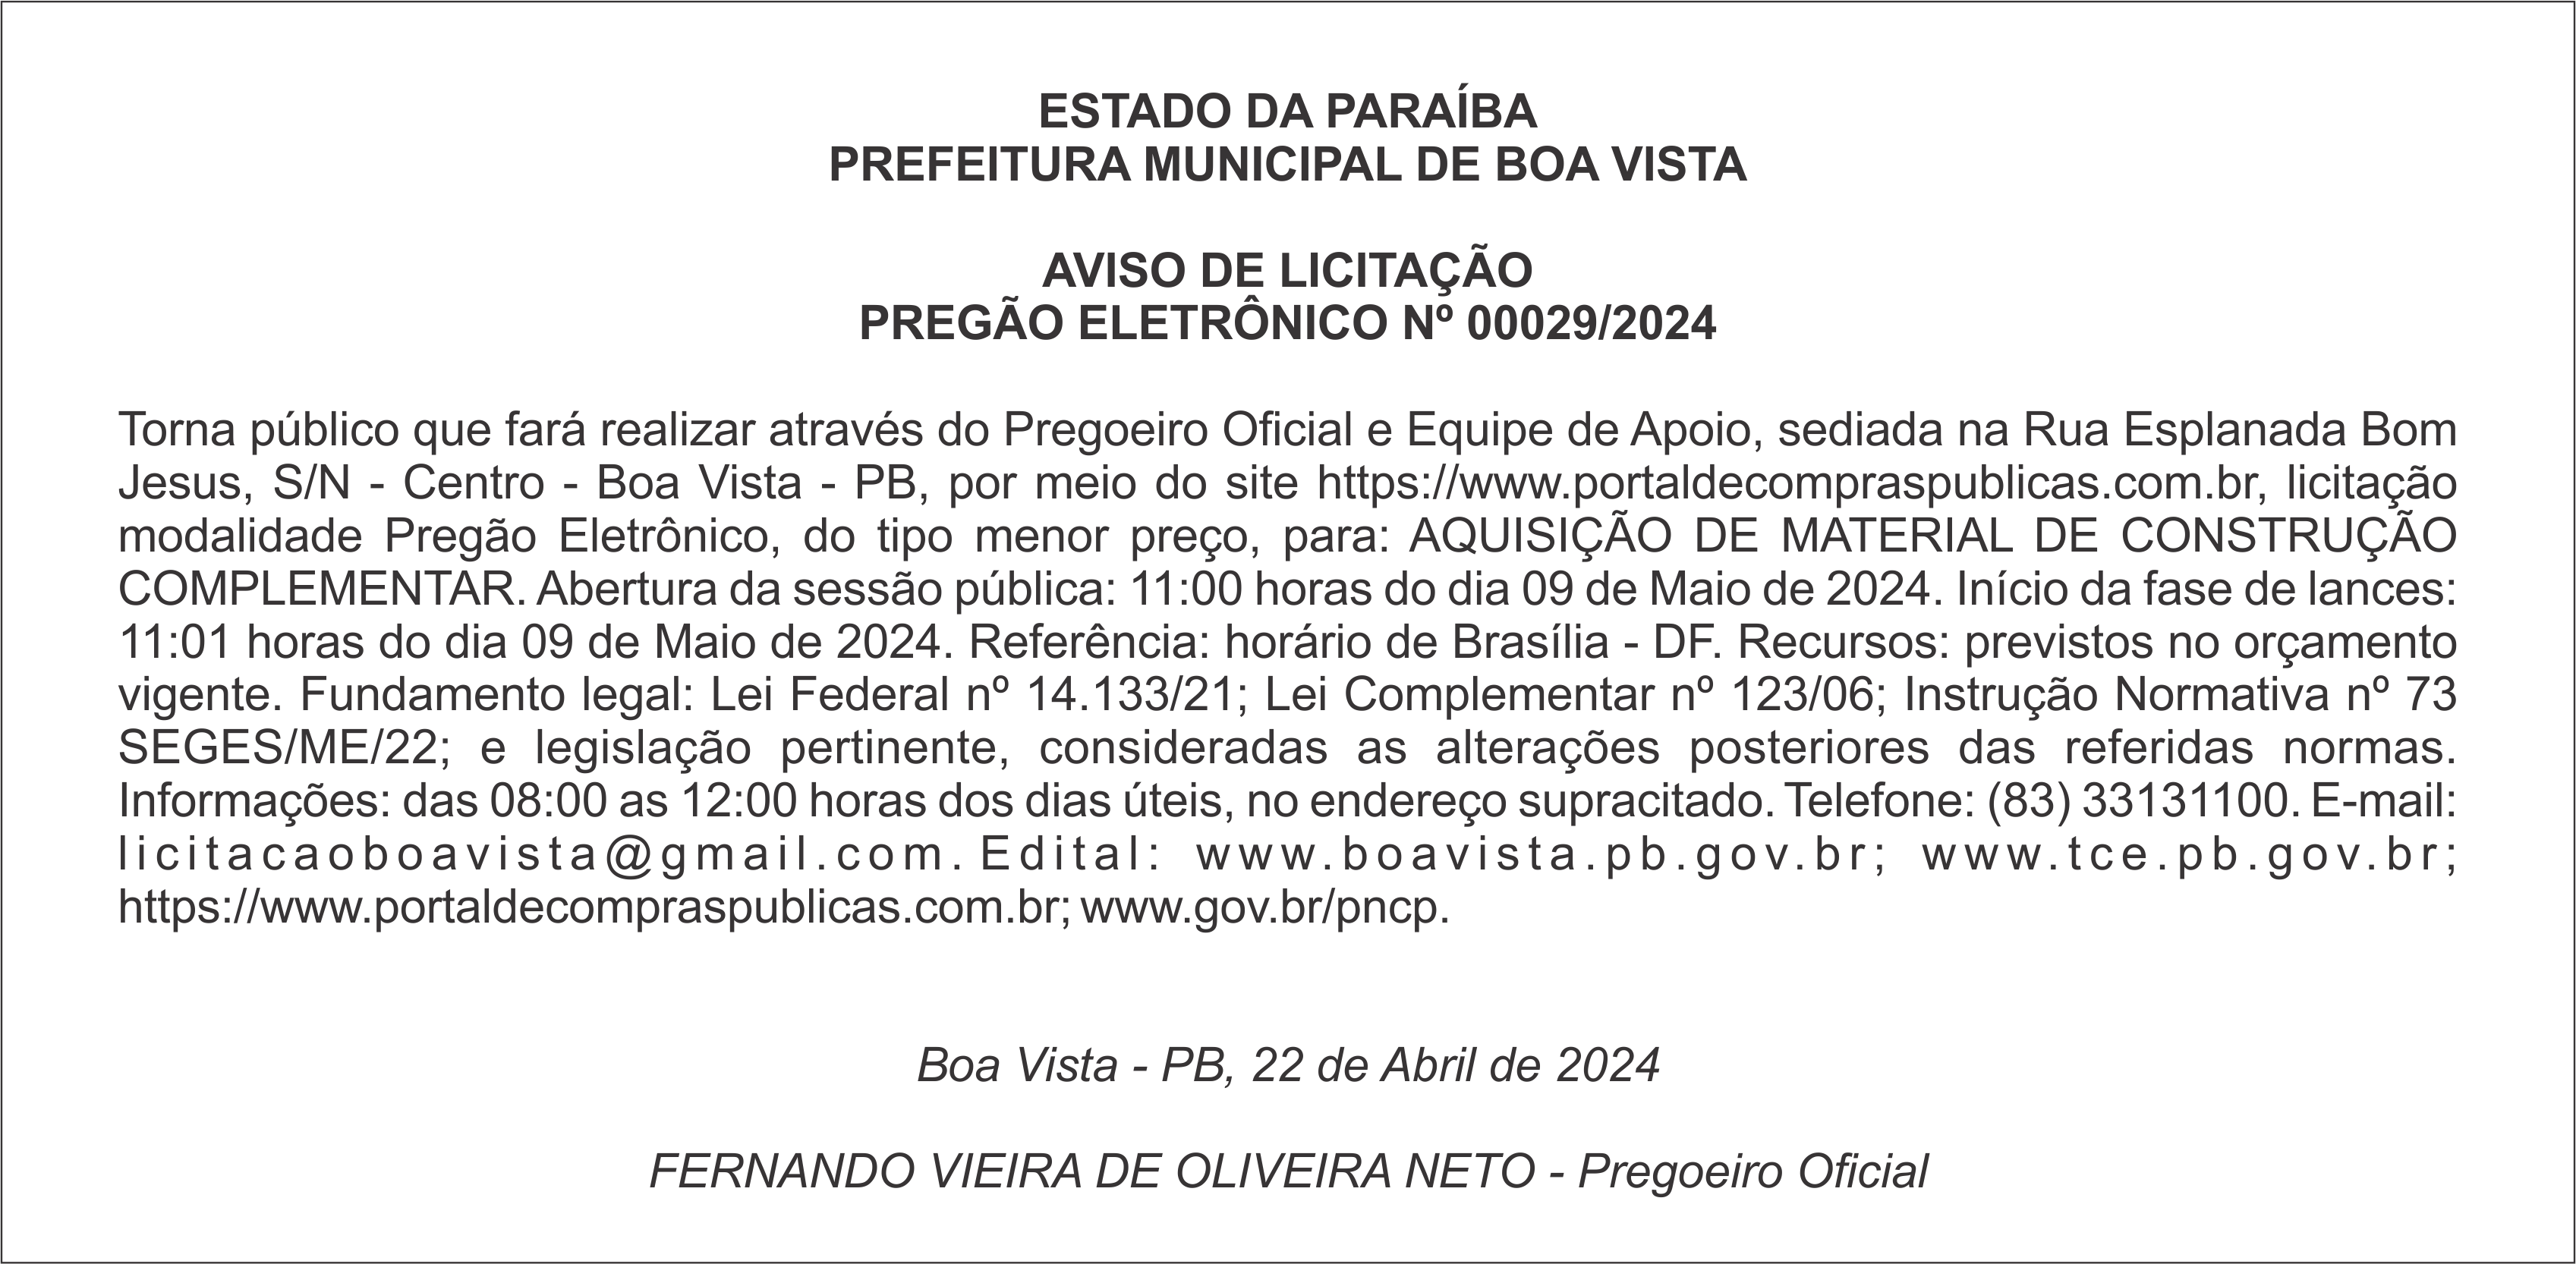 PREFEITURA MUNICIPAL DE BOA VISTA – AVISO DE LICITAÇÃO – PREGÃO ELETRÔNICO Nº 00029/2024